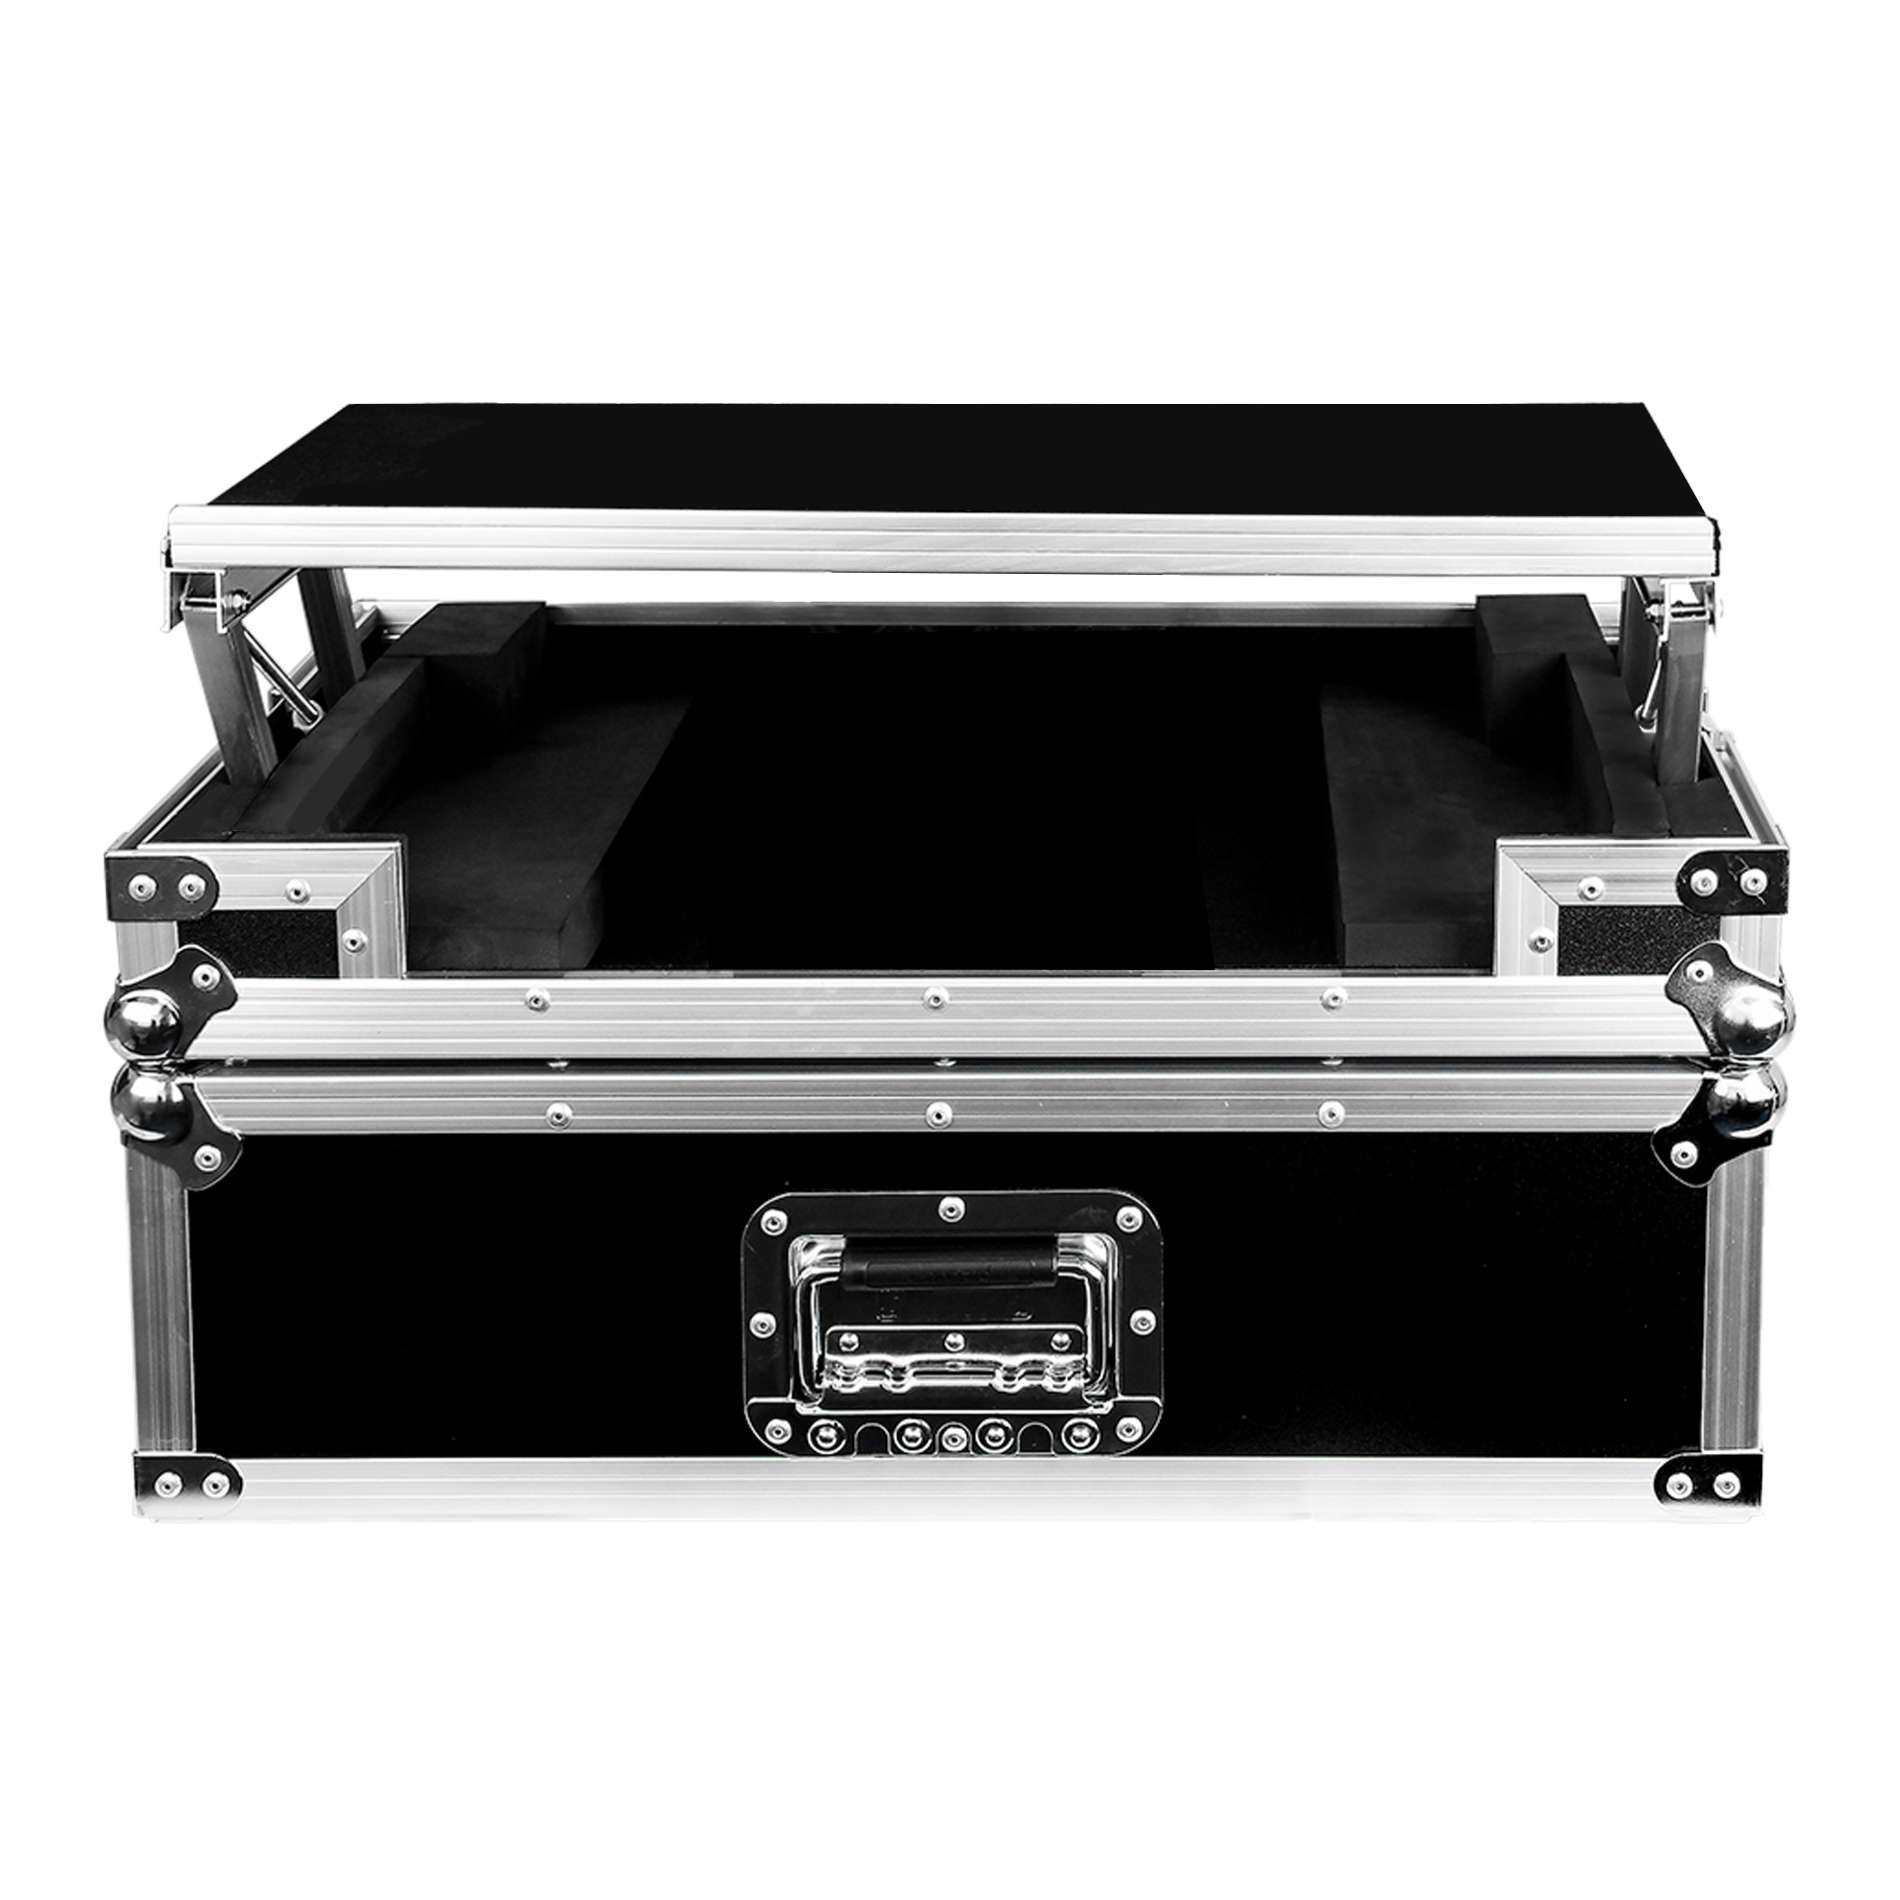 Power Acoustics Flight-case Pour ContrÔleur Ddj 400 - Flightcase DJ - Variation 1